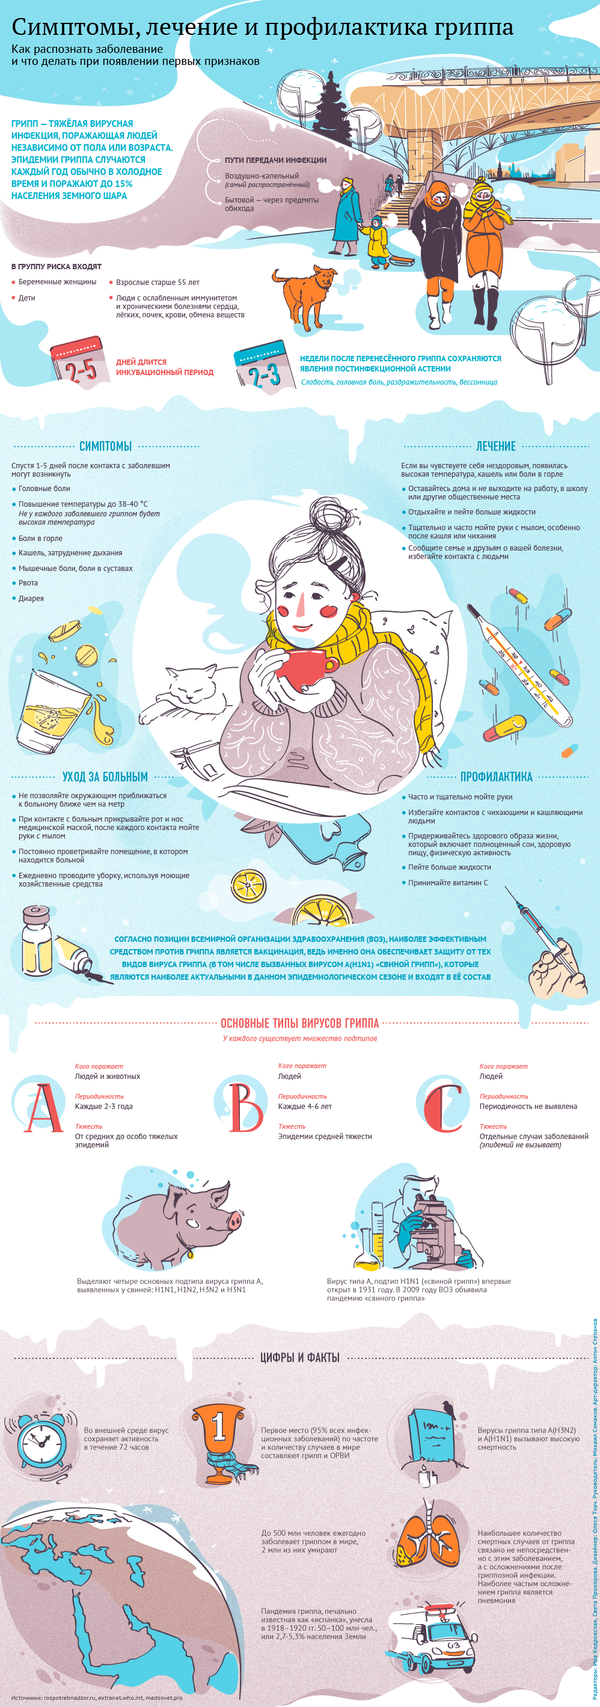 Симптомы, лечение и профилактика гриппа - Sputnik Беларусь